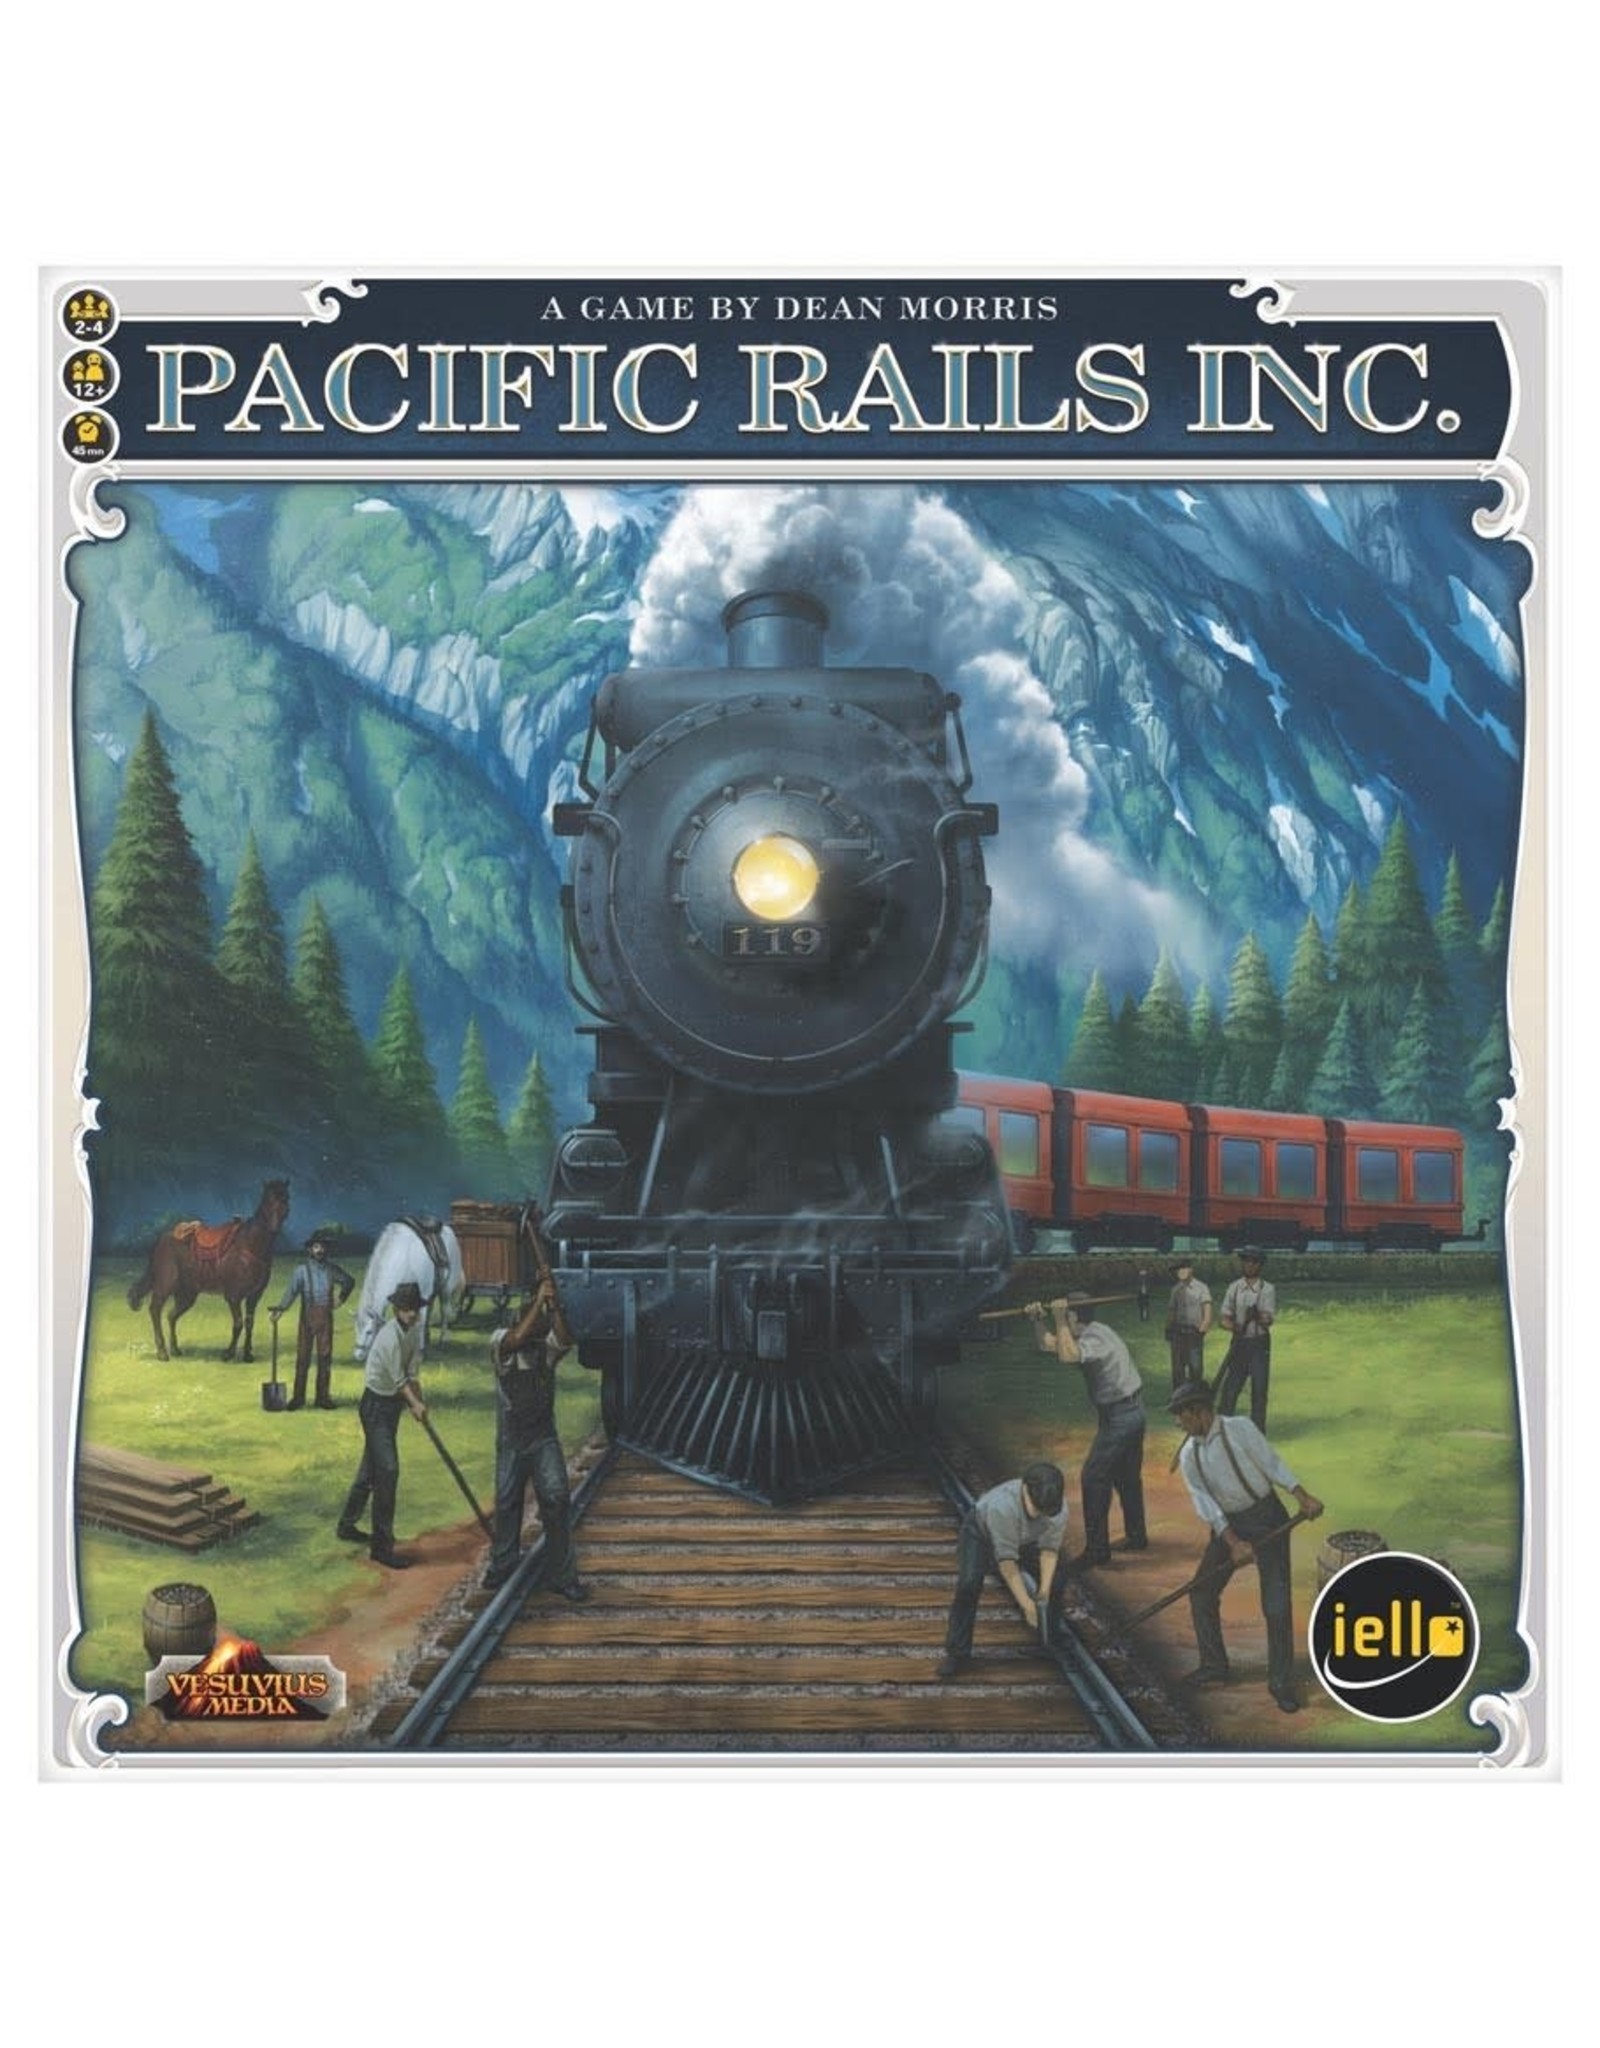 iello Pacific Rails Inc